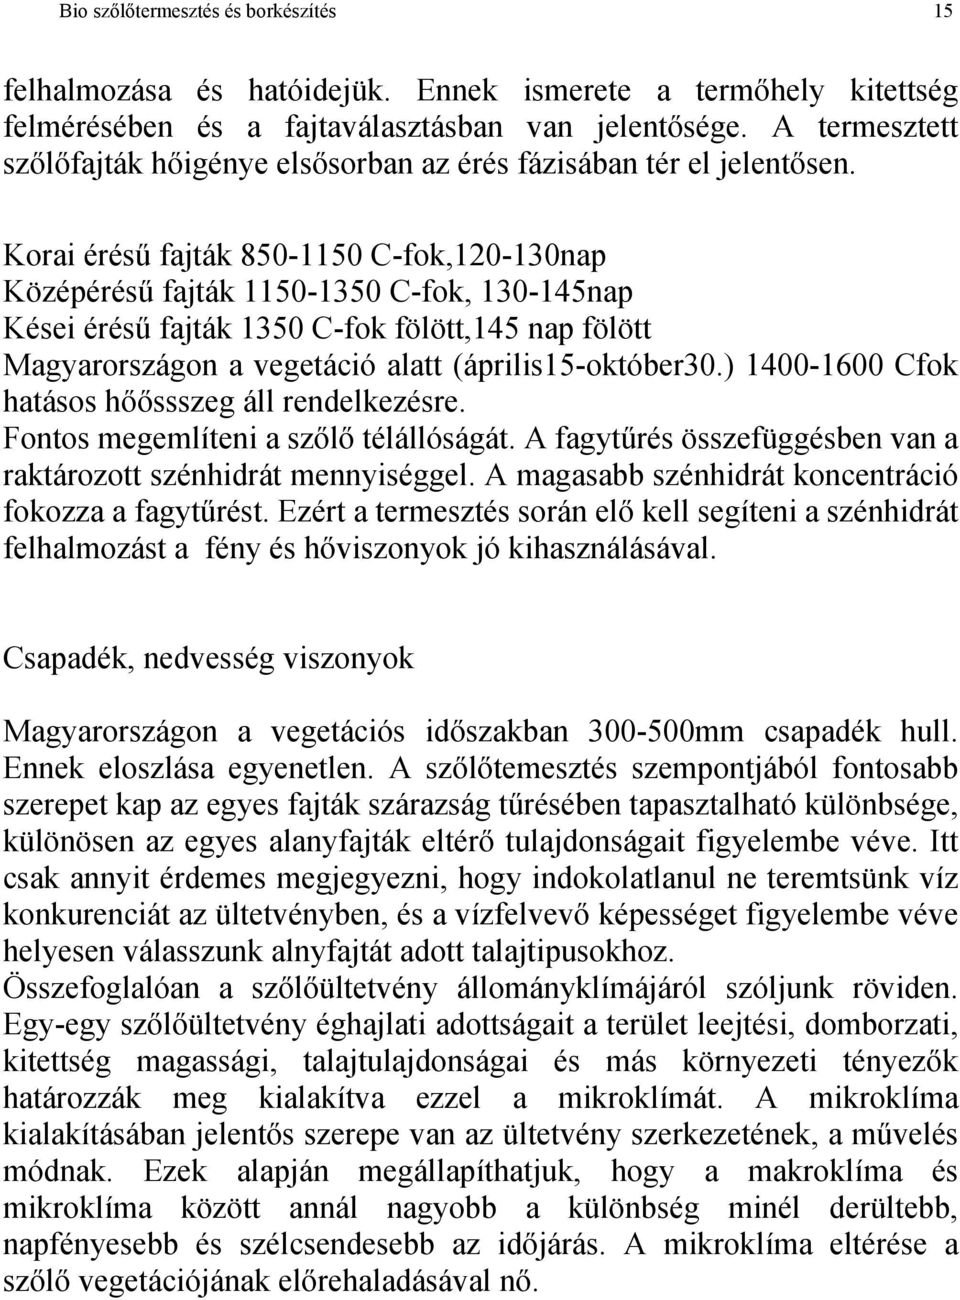 Korai érésű fajták 850-1150 C-fok,120-130nap Középérésű fajták 1150-1350 C-fok, 130-145nap Kései érésű fajták 1350 C-fok fölött,145 nap fölött Magyarországon a vegetáció alatt (április15-október30.